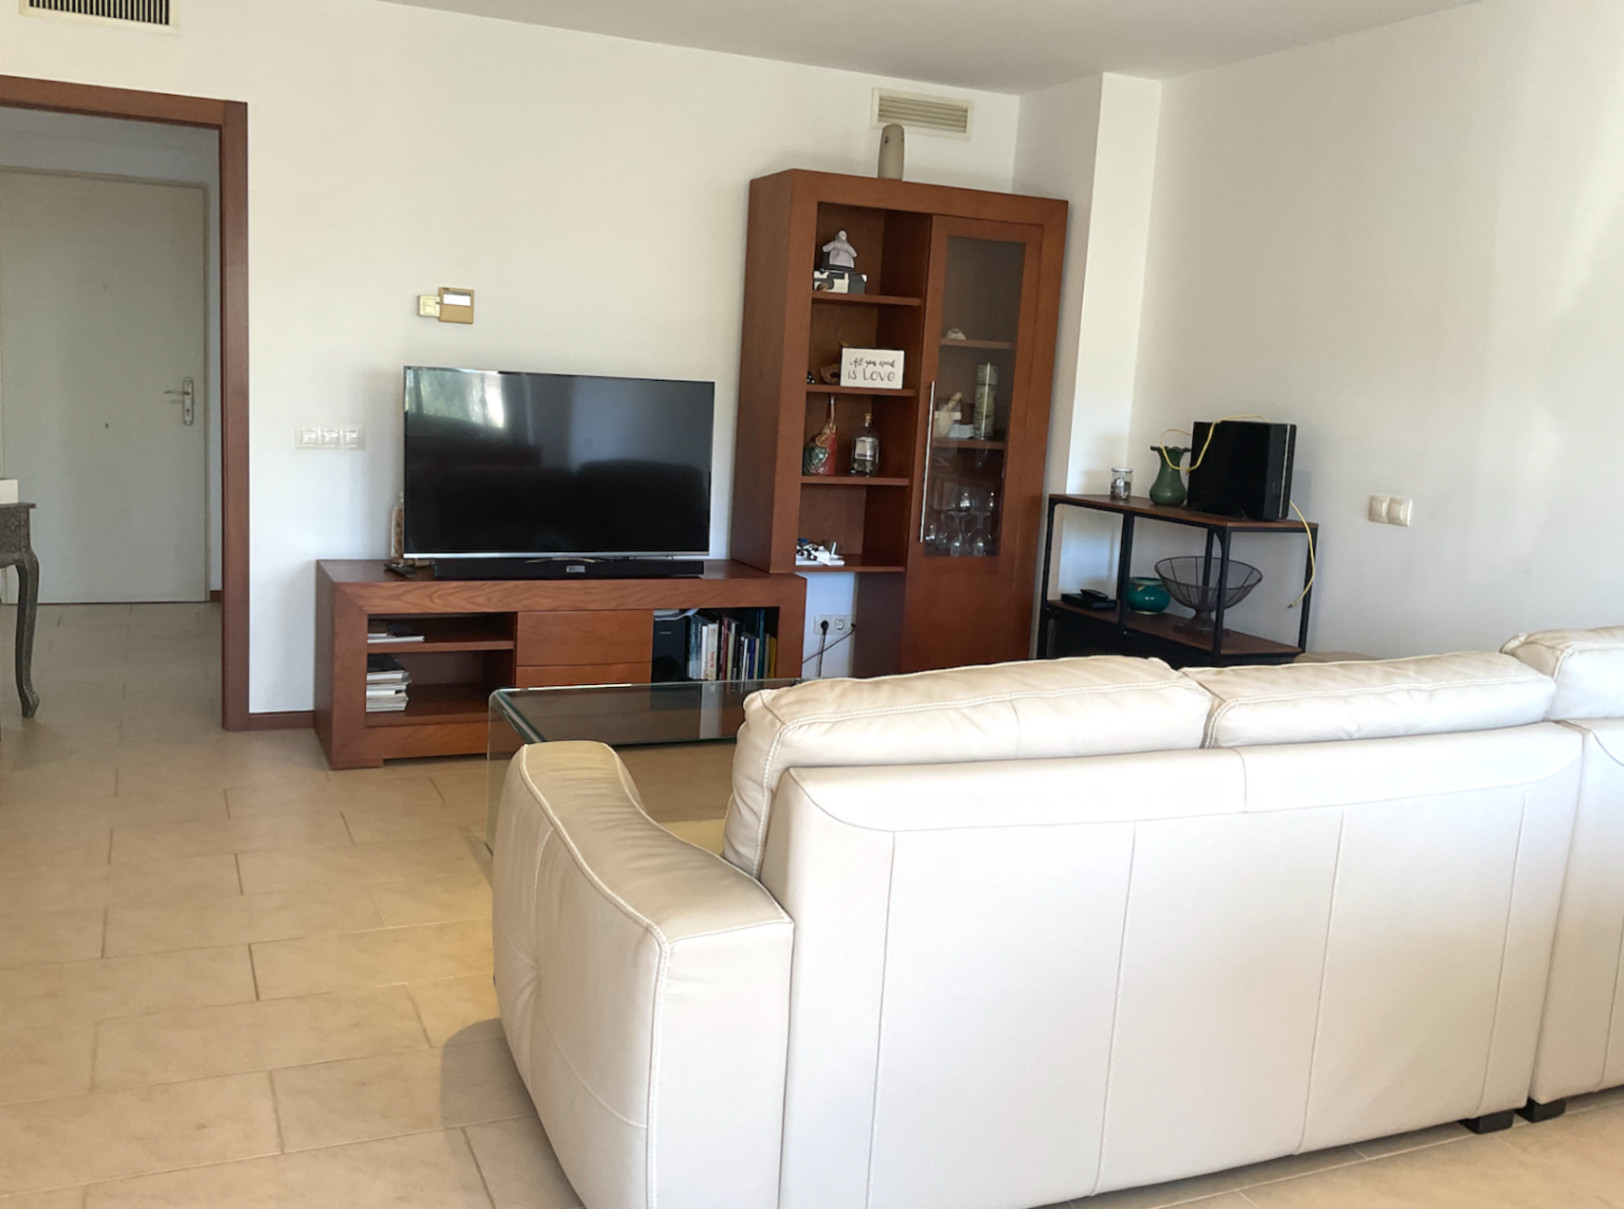 Ruim appartement in Santa Eulalia vlakbij het strand